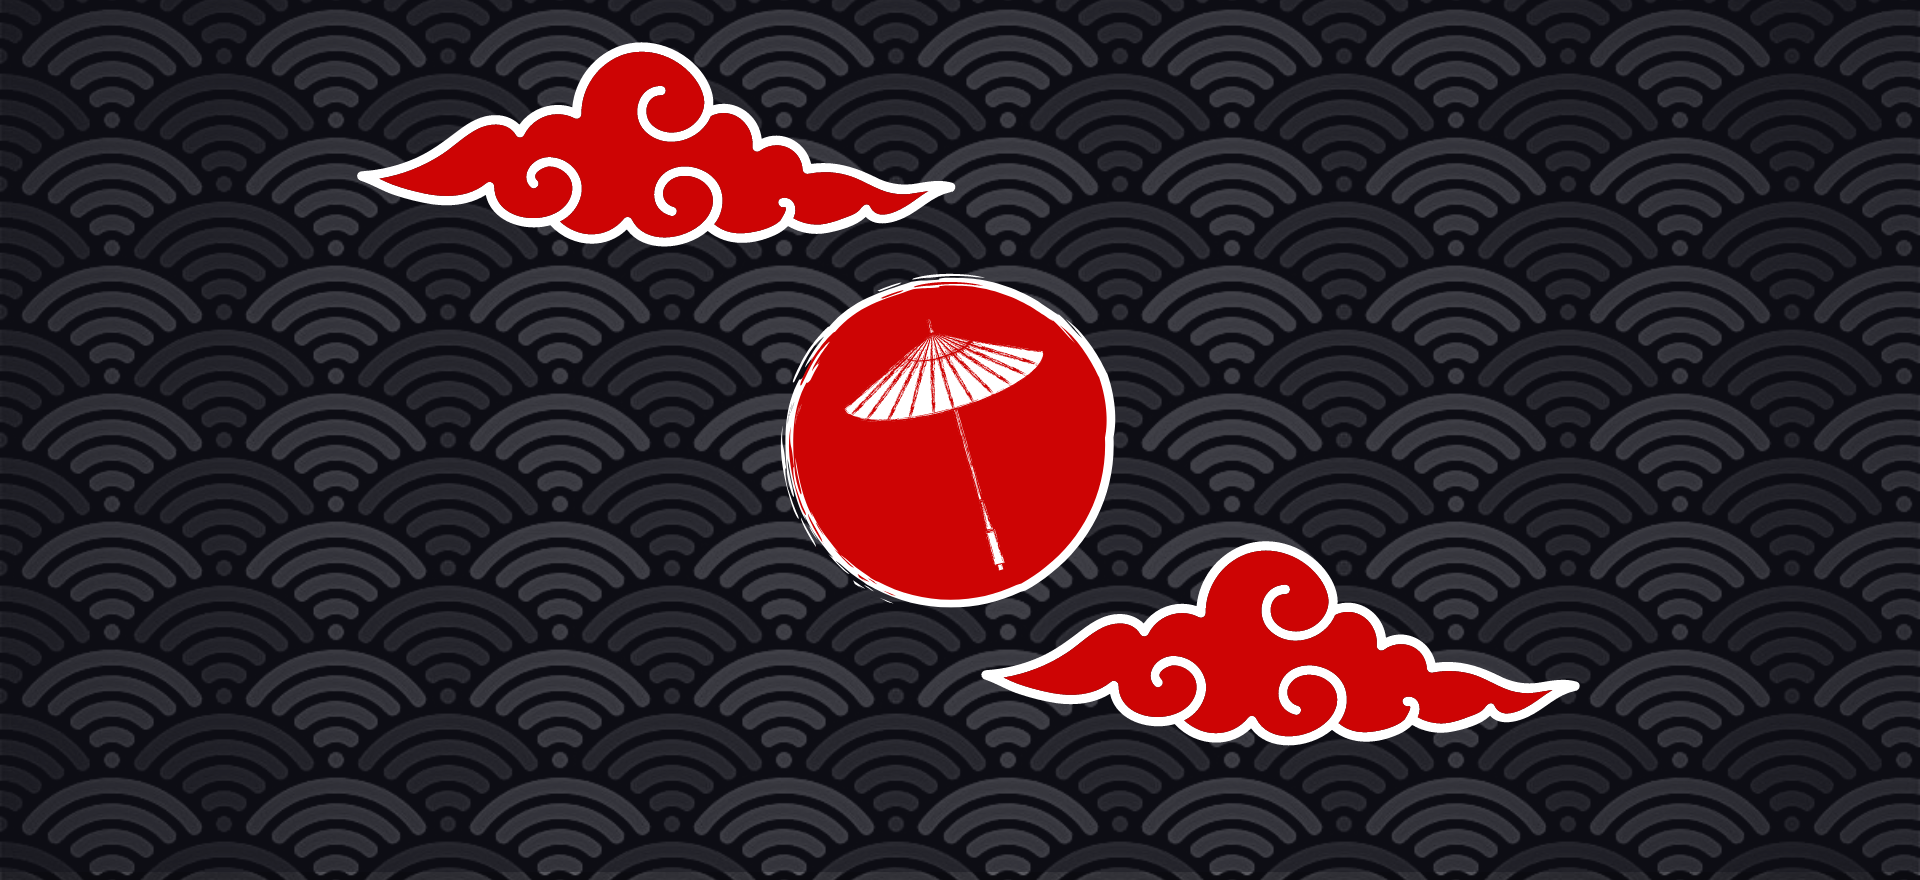 Japanischer Schirm